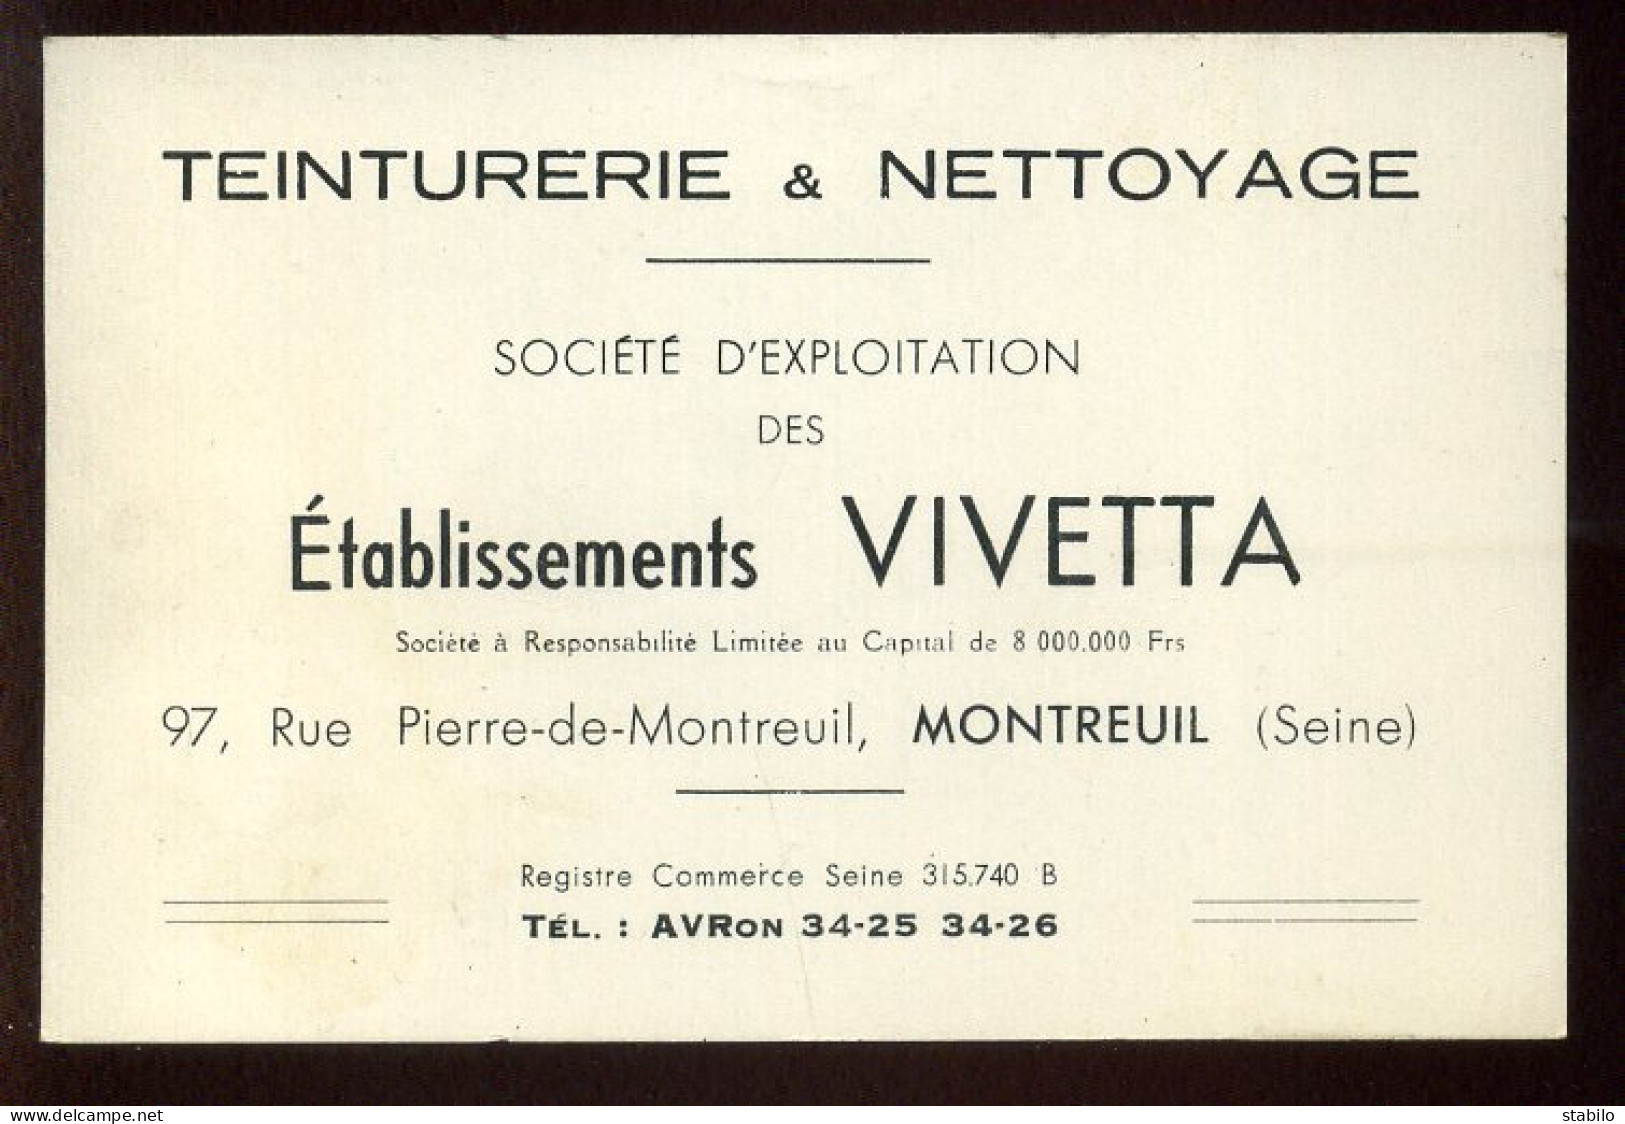 CARTE DE VISITE - TEINTURERIE VIVETTA, 97 RUE P.DE.MONTREUIL, MONTREUIL (SEINE-ST-DENIS) - Cartes De Visite